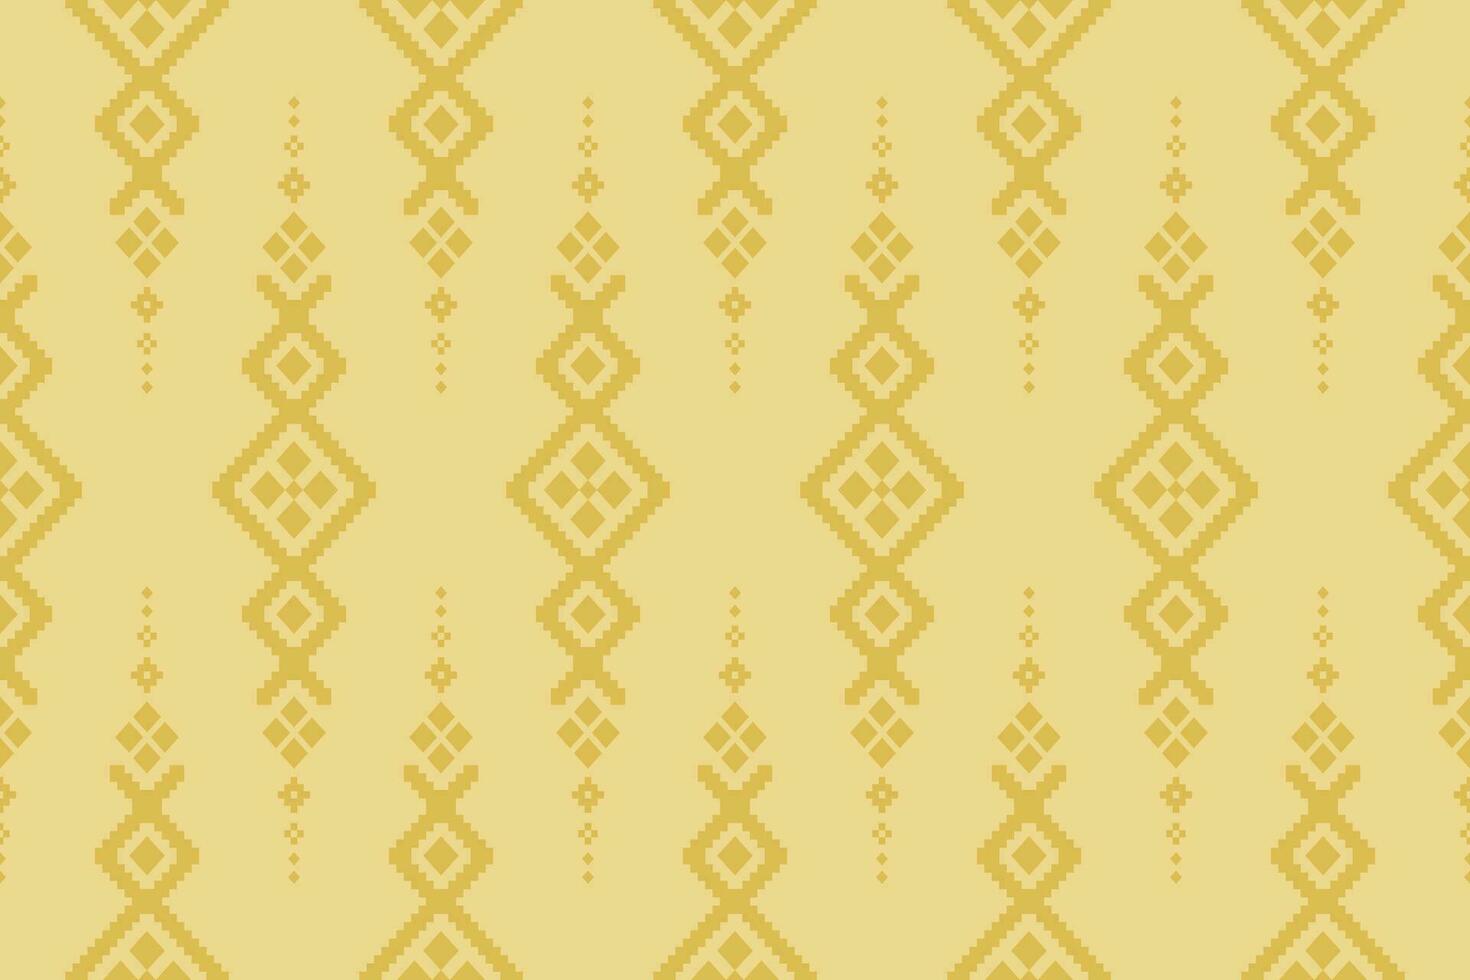 Kreuz Stich bunt geometrisch traditionell ethnisch Muster Ikat nahtlos Muster abstrakt Design zum Stoff drucken Stoff Kleid Teppich Vorhänge und Sarong aztekisch afrikanisch indisch indonesisch vektor